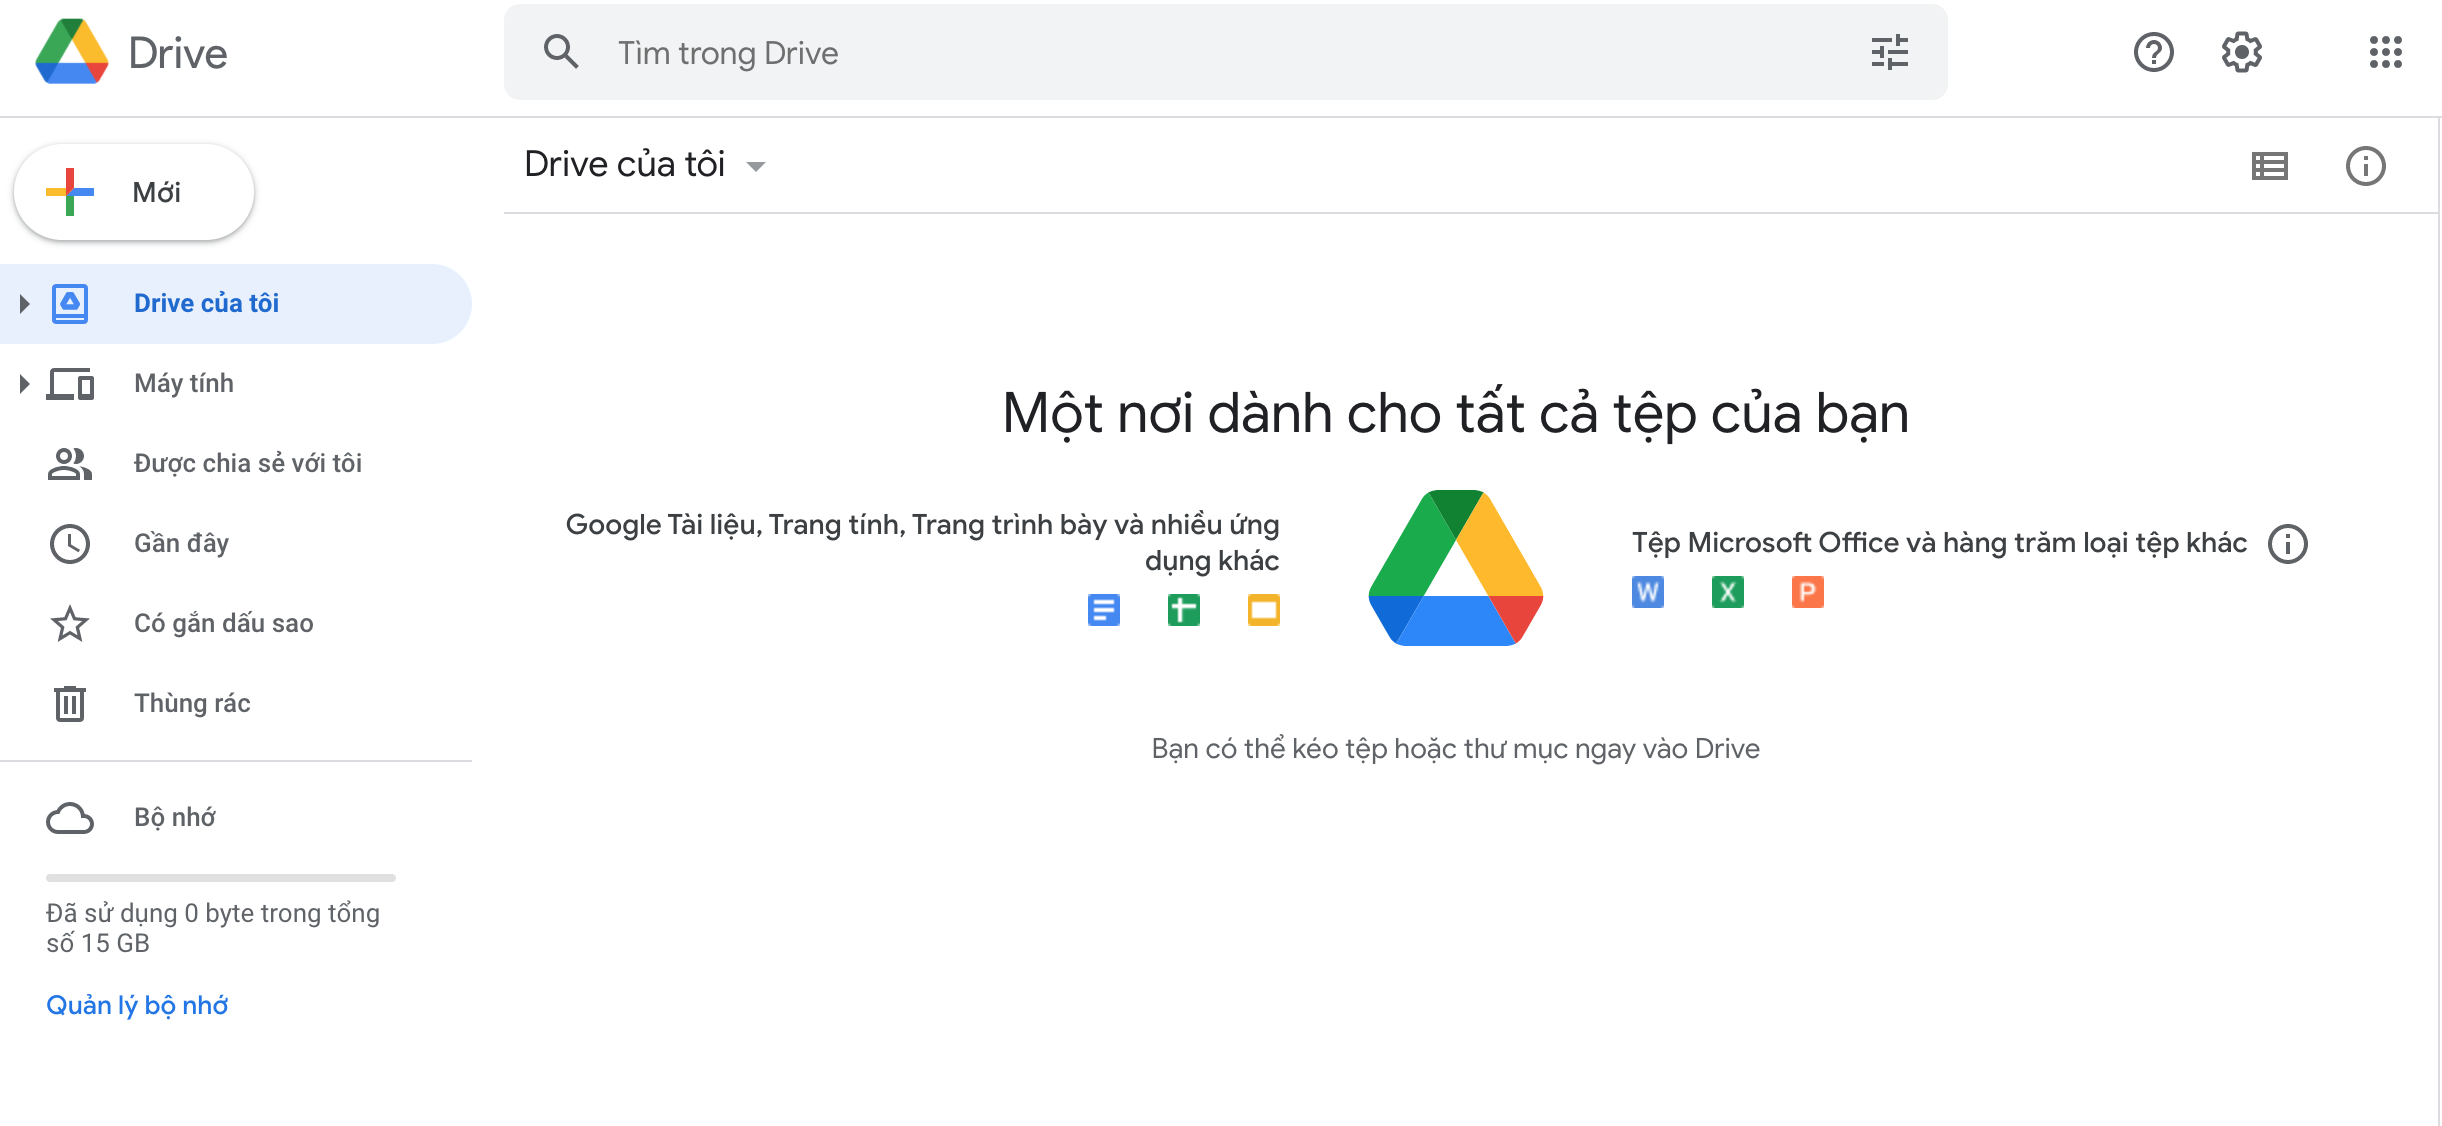 Google Drive là gì? Cách sử dụng Google Drive đơn giản cho 1 người mới bắt đầu 1